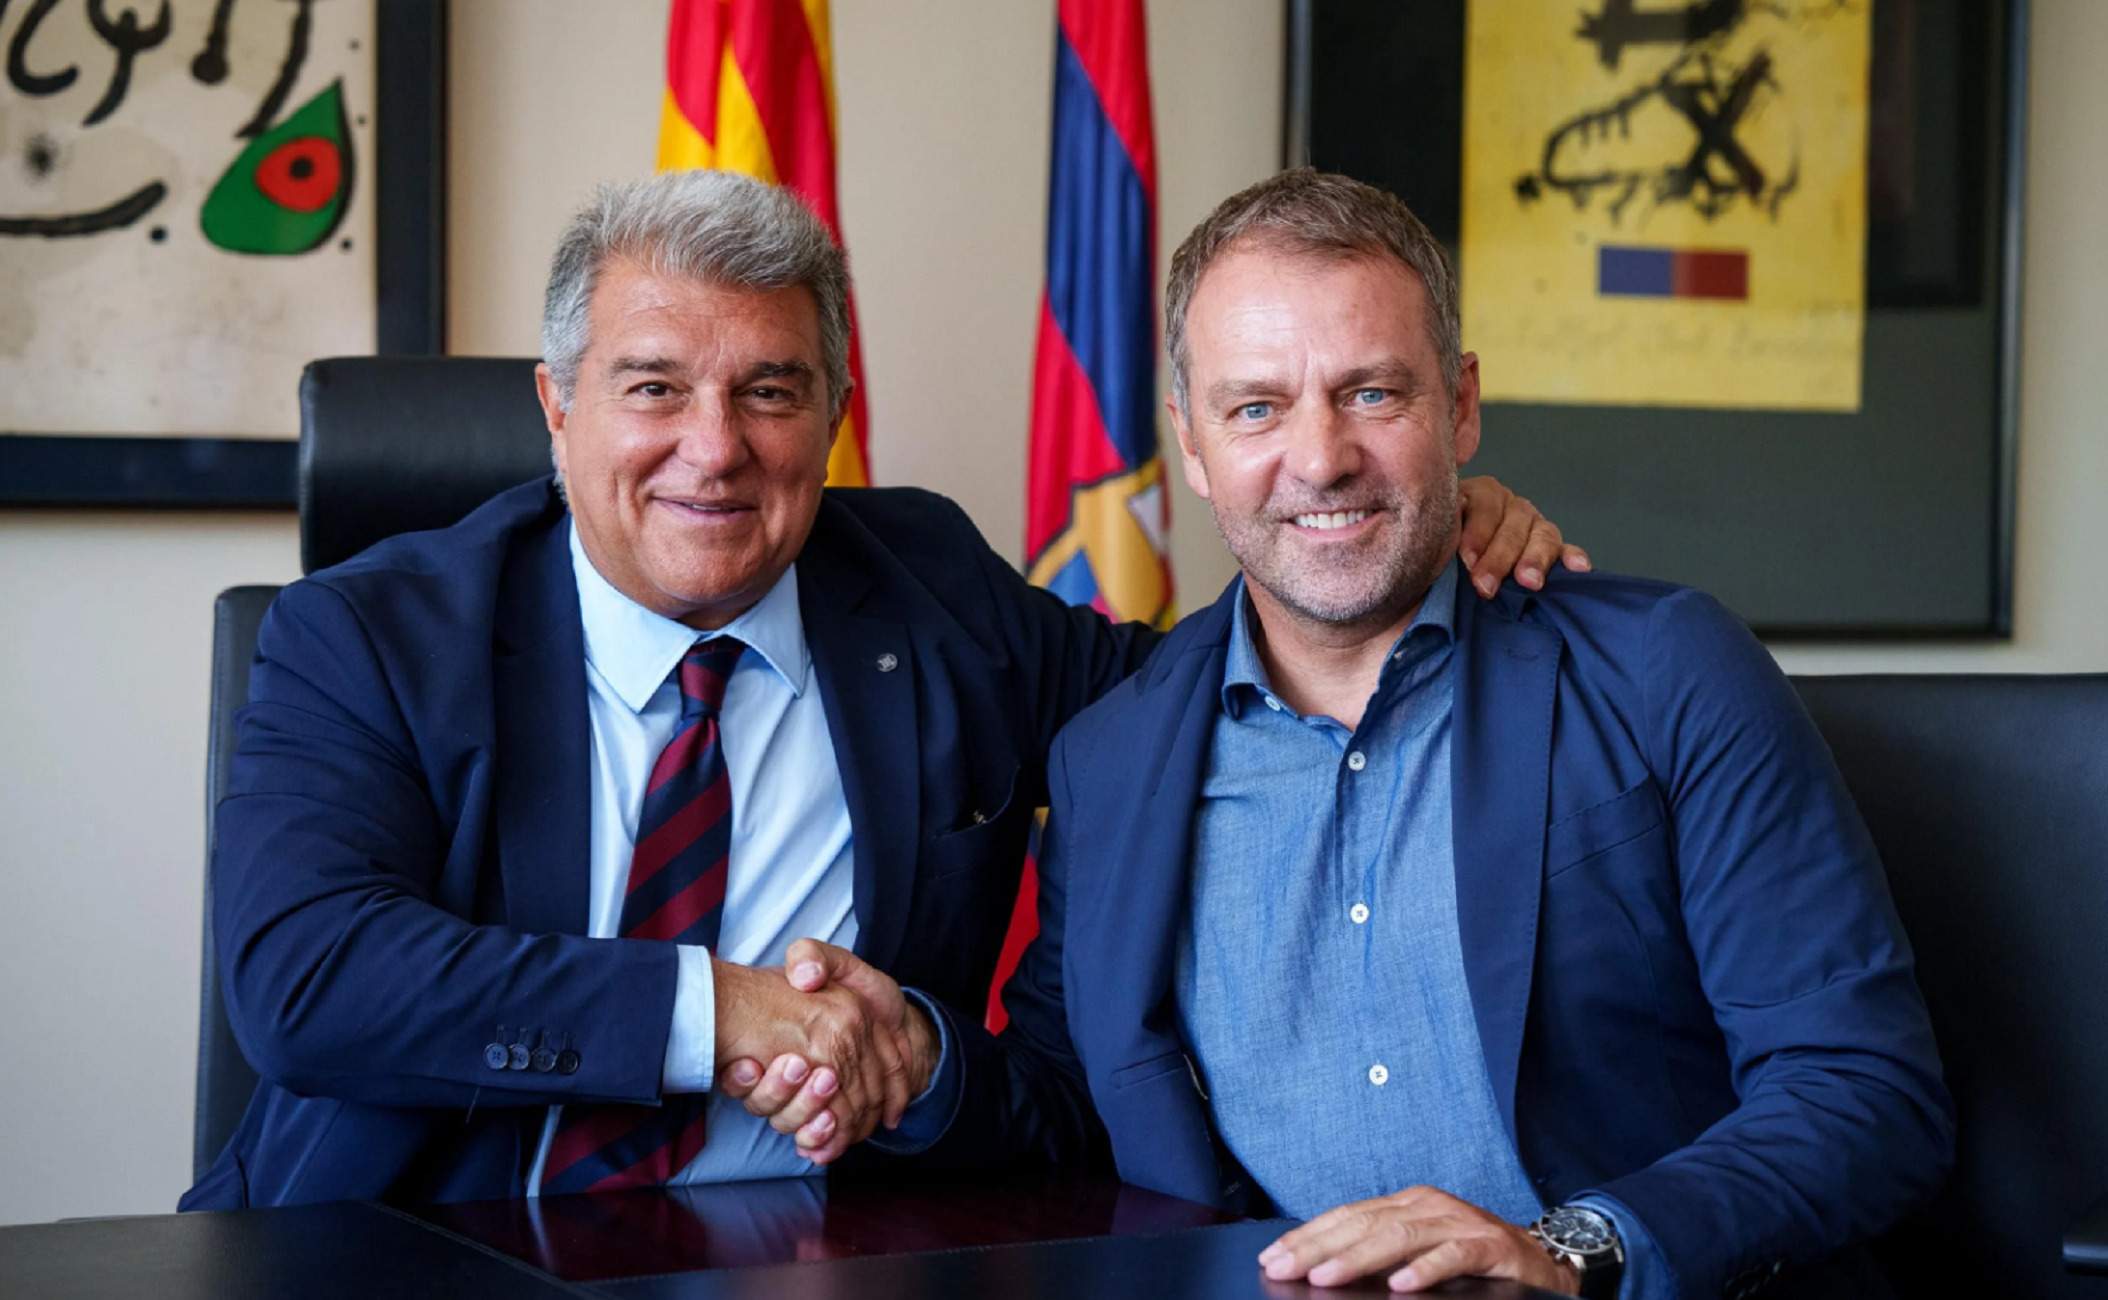 8 milions i adeu al Barça, perill real, Flick demana a Joan Laporta que actuï ja